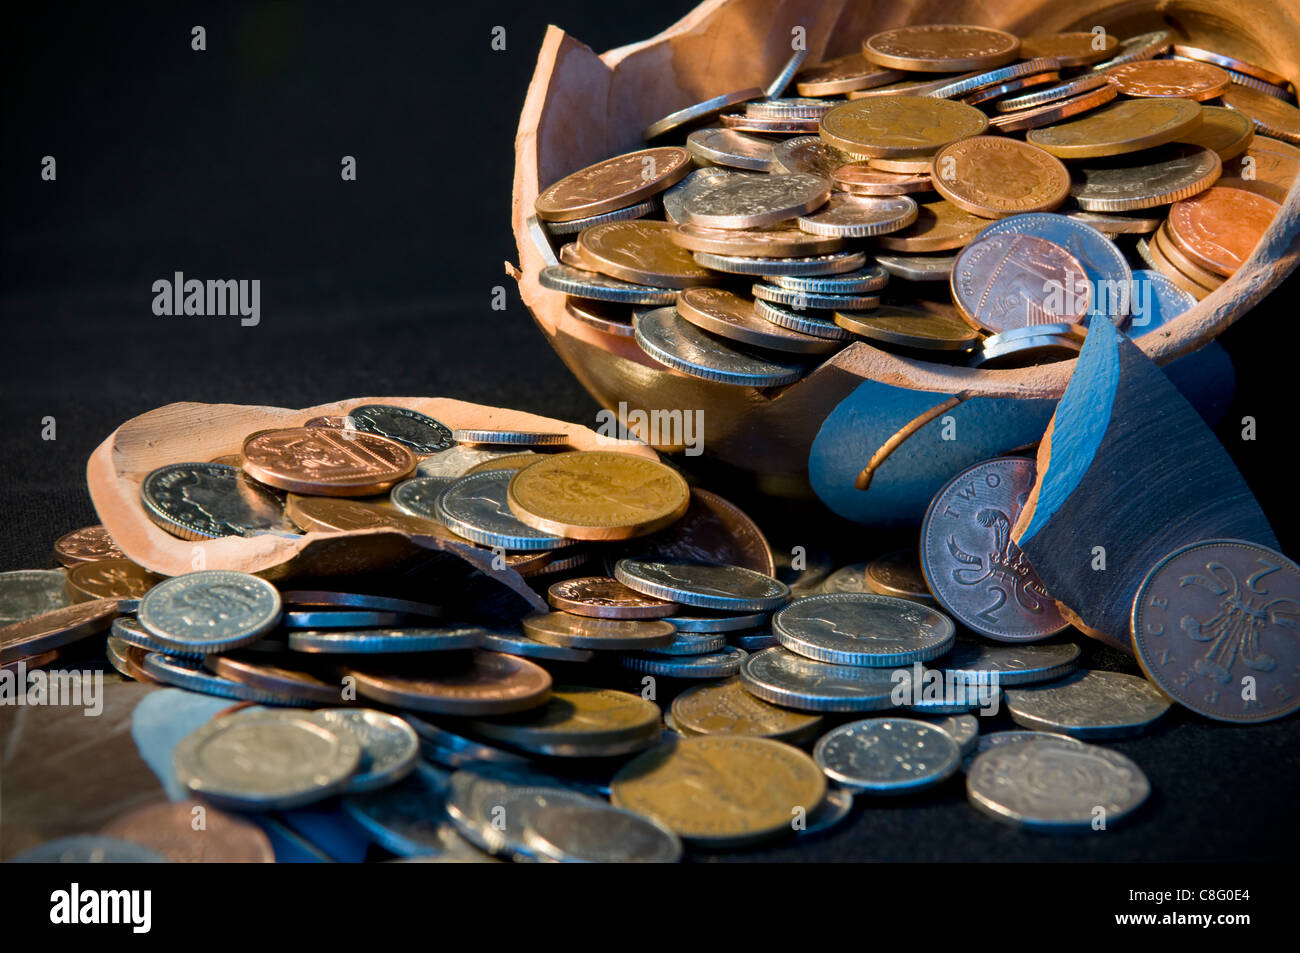 Rotto il risparmio terramundi pot con denaro fuoriuscita sopra il tavolo contro uno sfondo nero Foto Stock